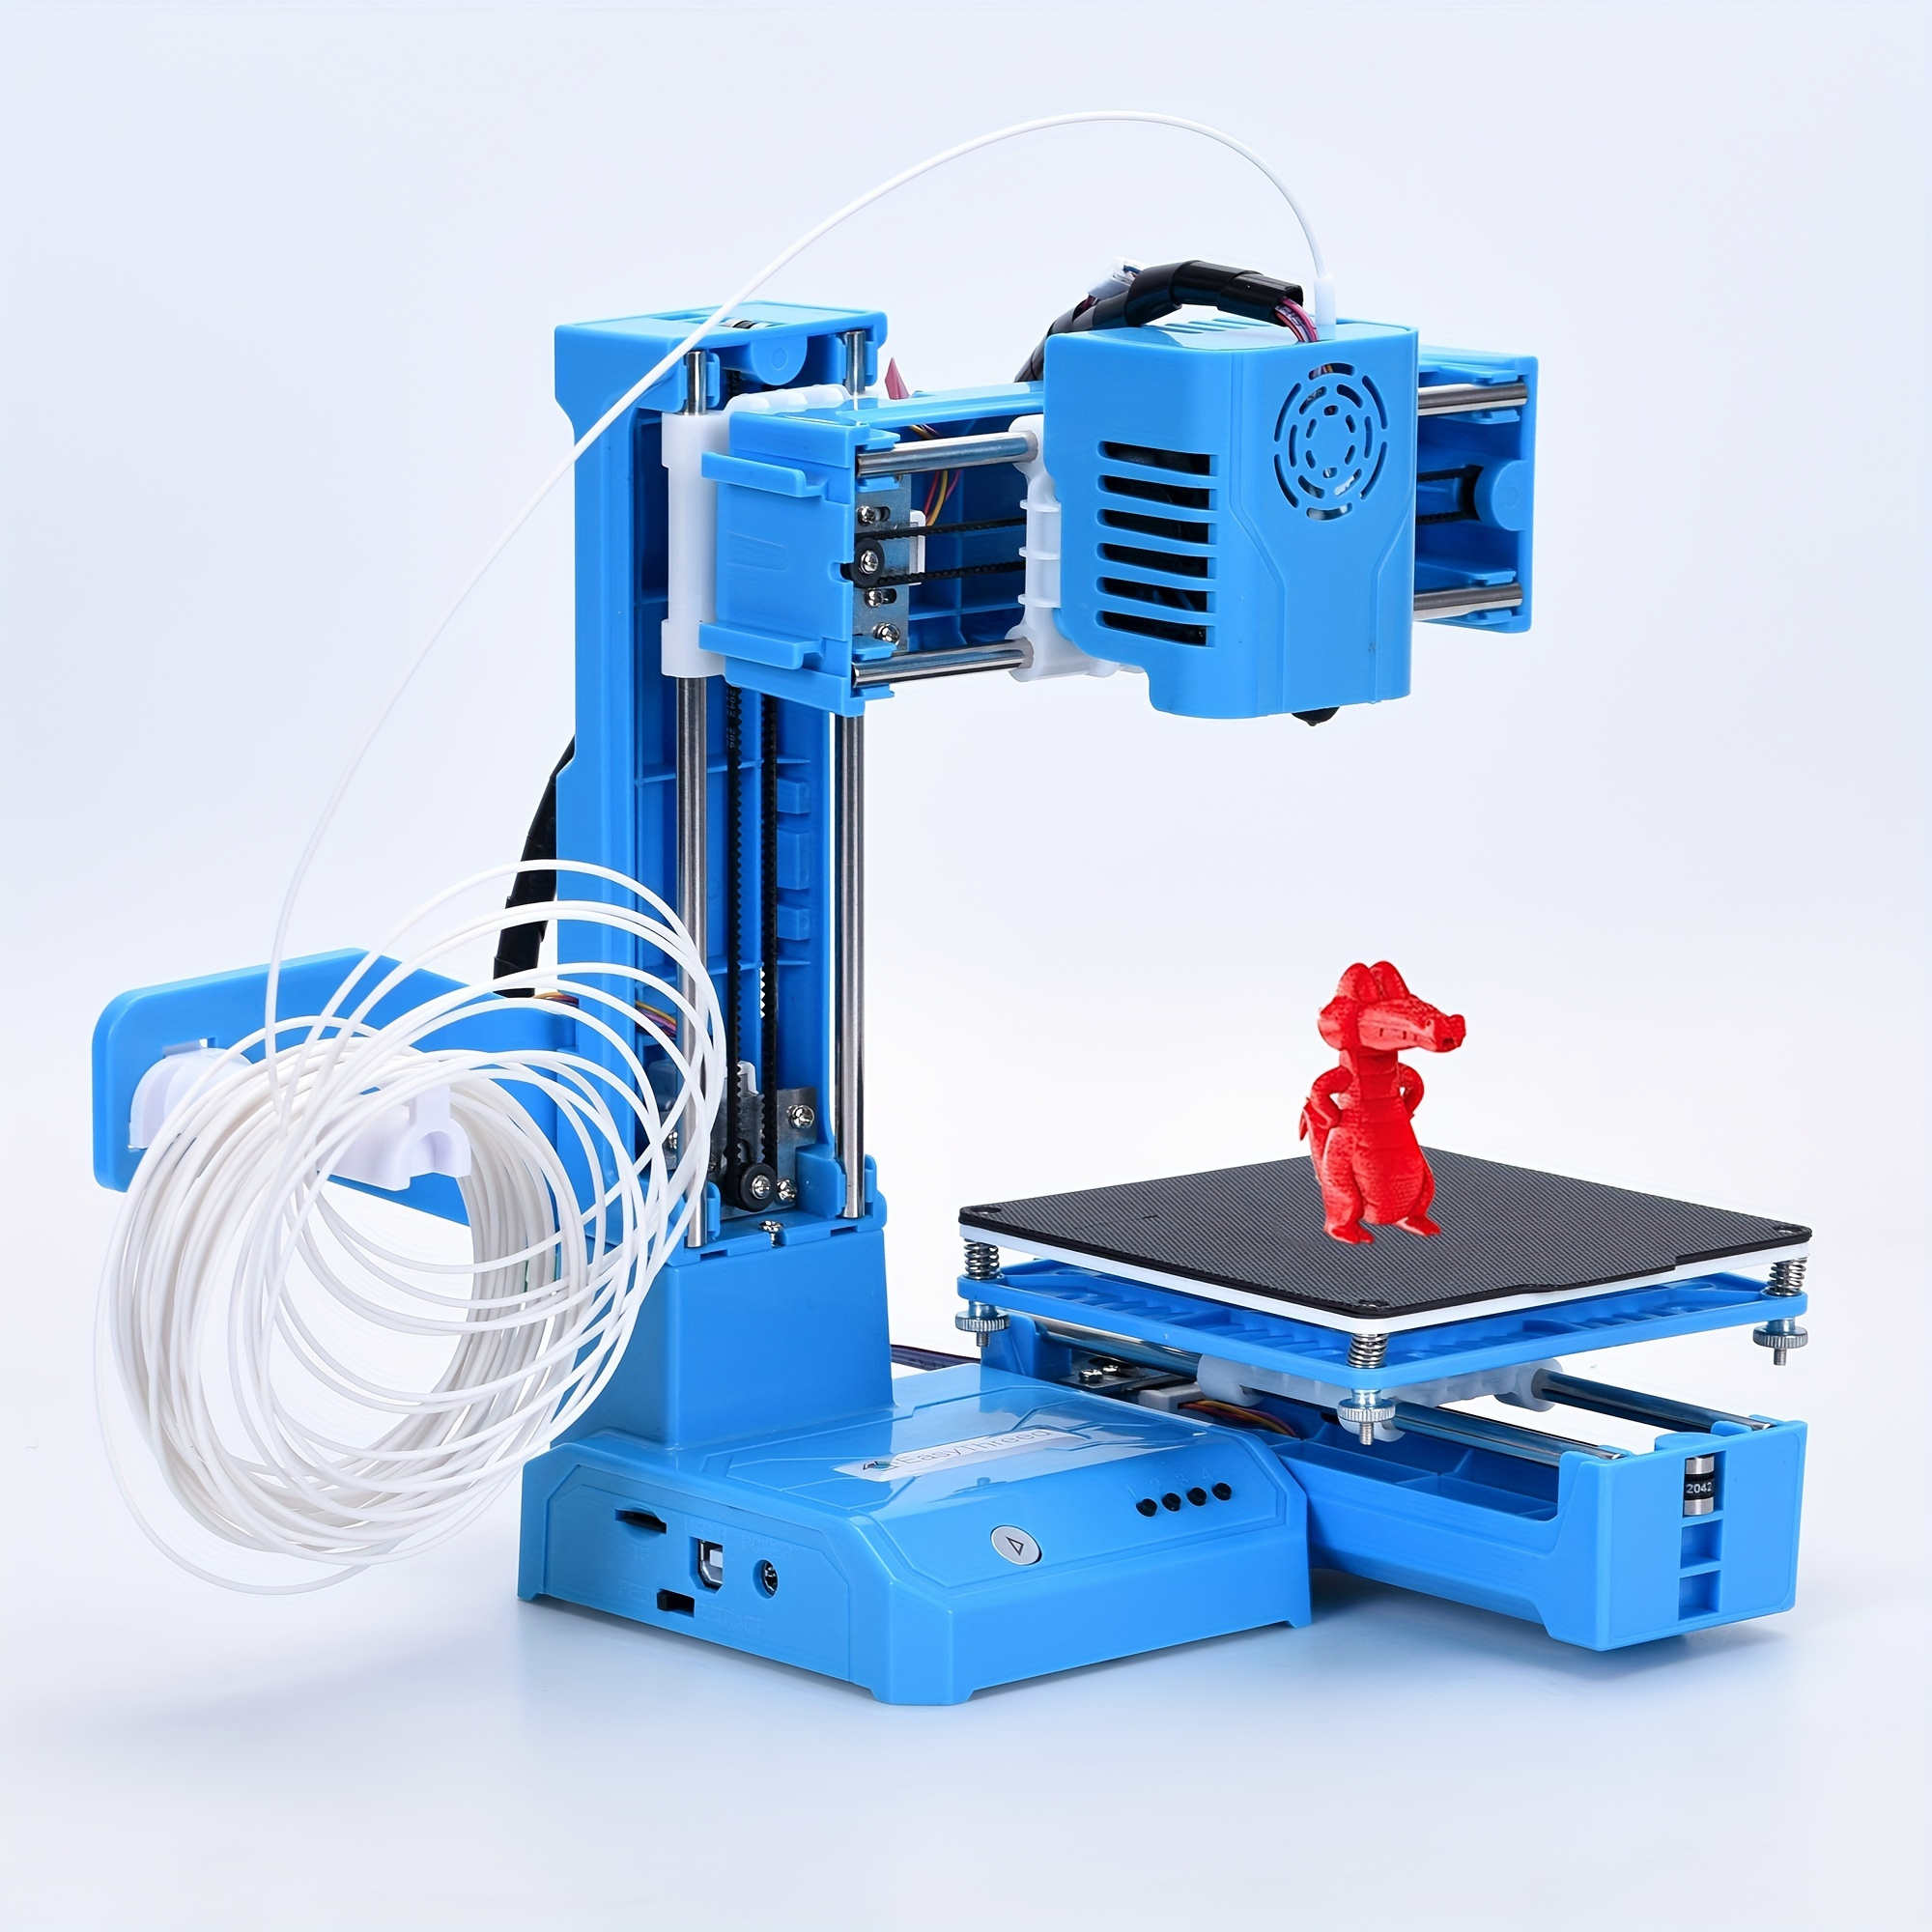 Jadeshay Stampante 3D Mini Desktop Kit per Principianti Bambini Adolescenti Stampante  3D con Filamento PLA Piastra Magnetica Rimovibile Cavo USB Scheda TF  velocità di Stampa Massima 40mm/s : : Commercio, Industria e